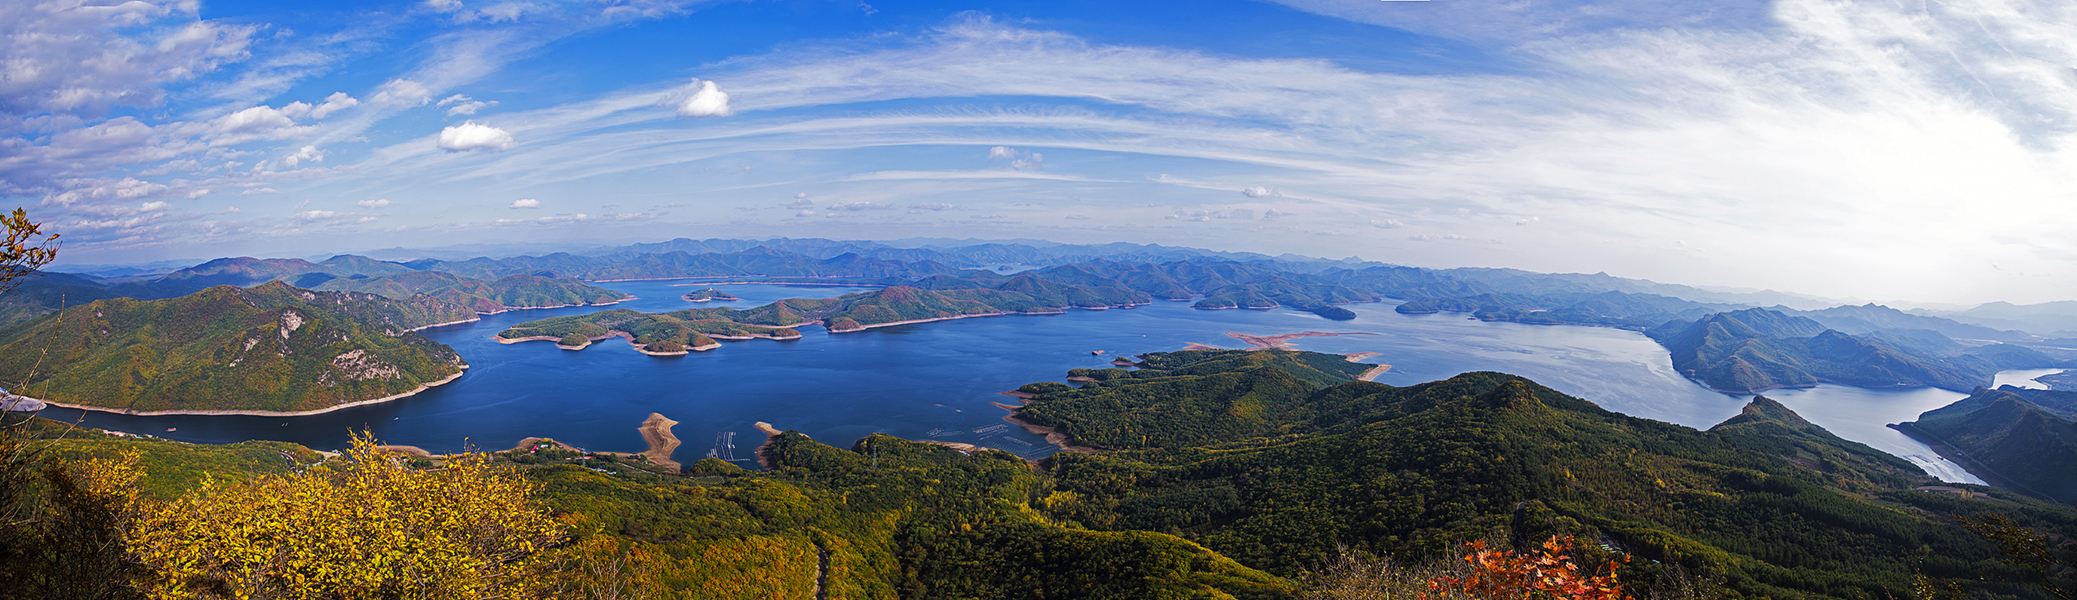 桓龍湖